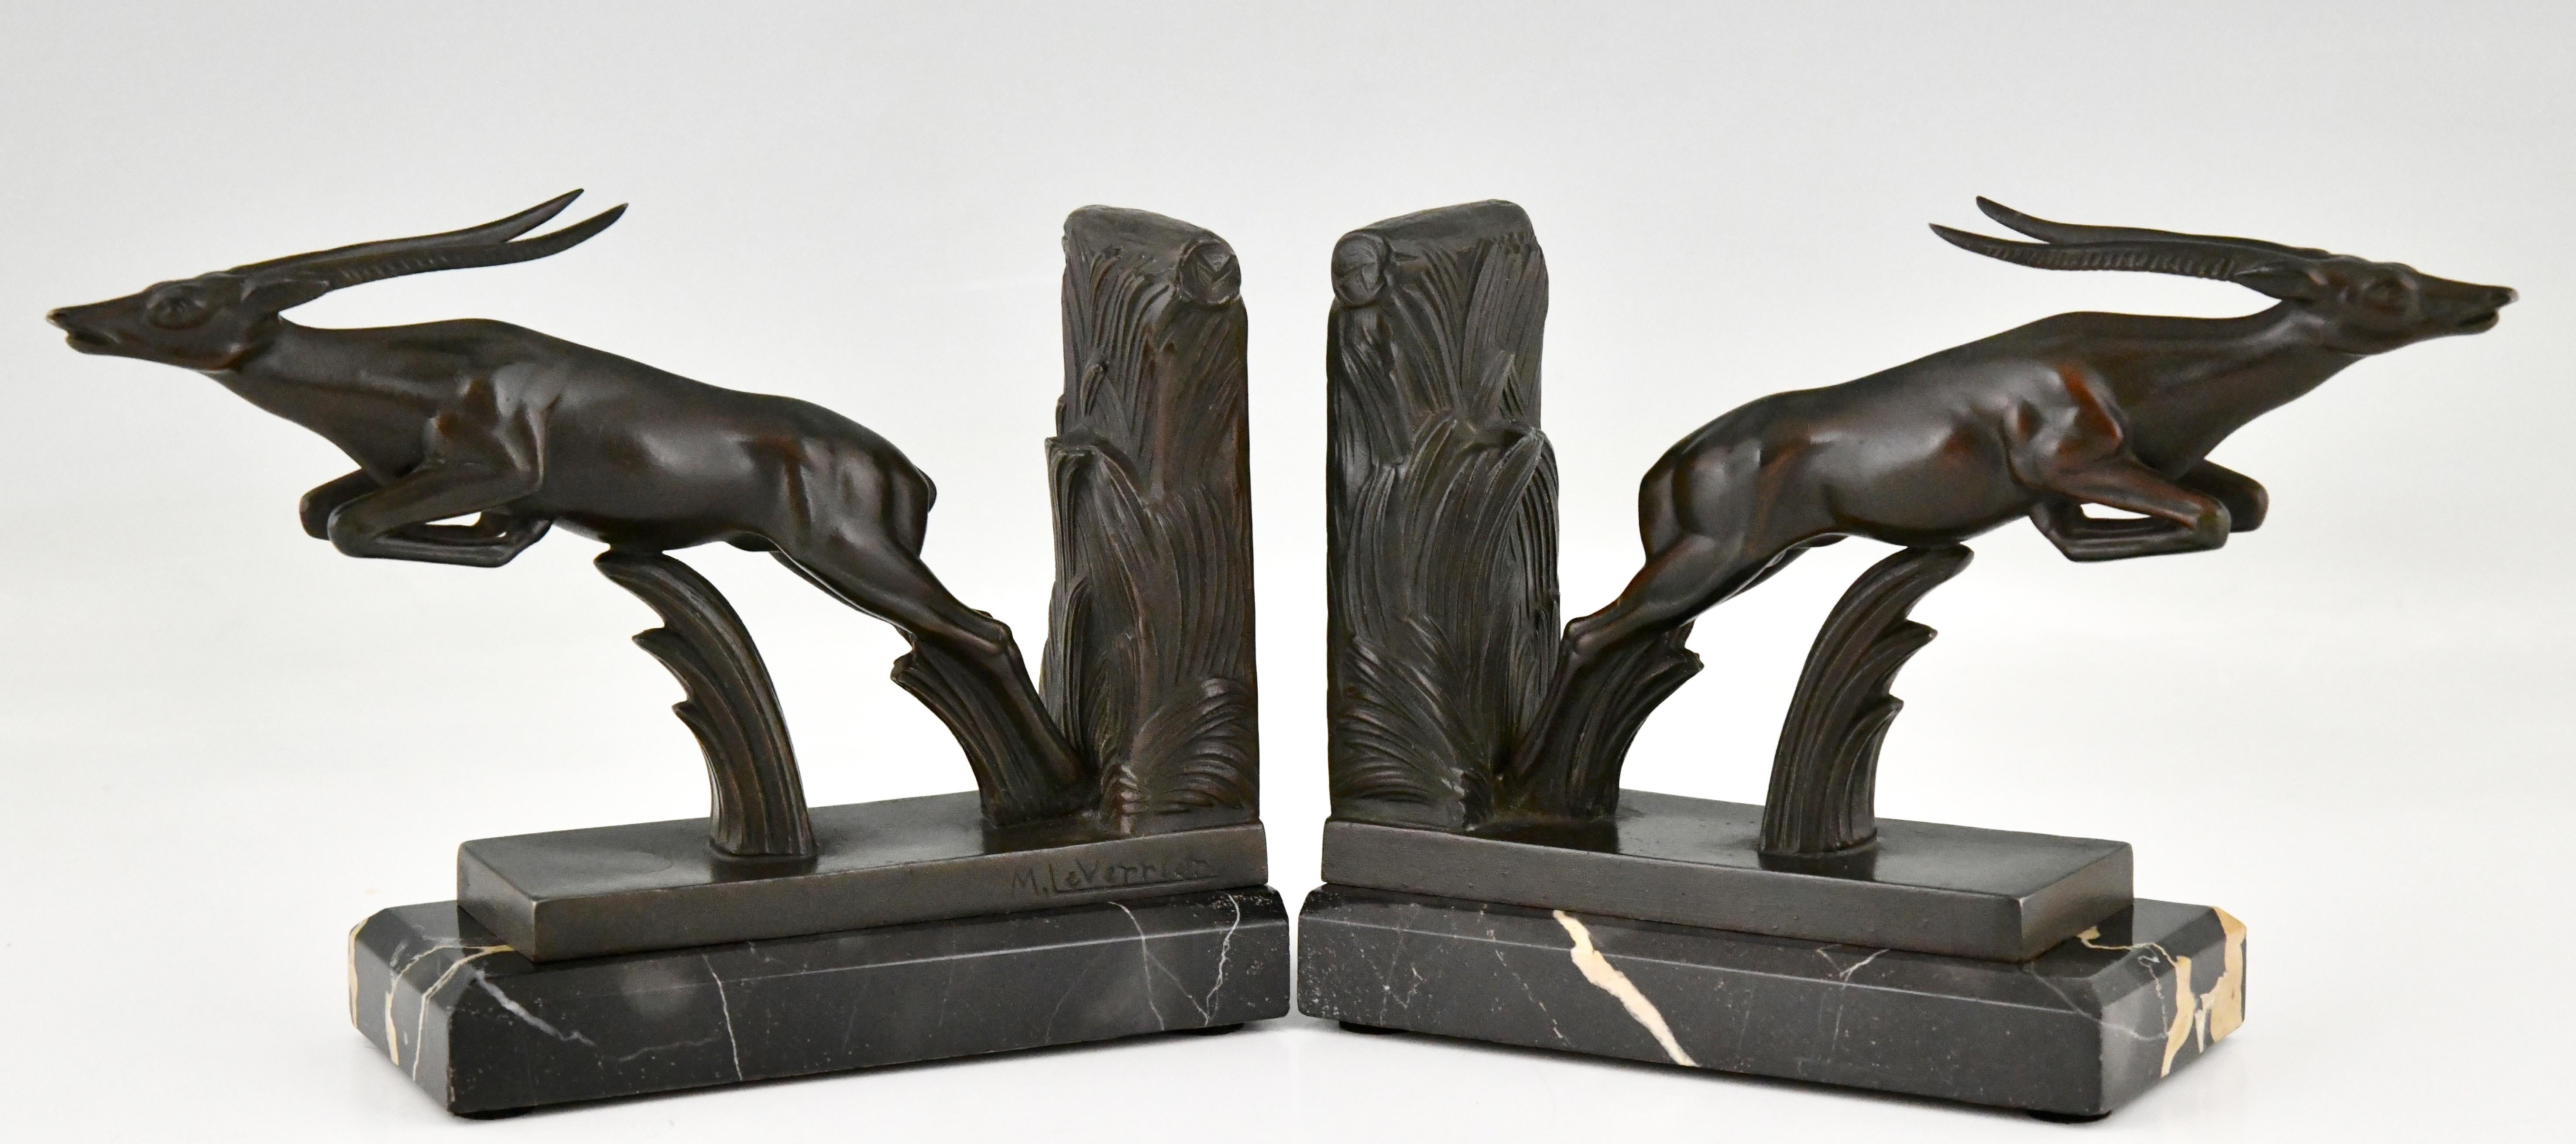 Serre-livres Art Déco en forme de cerf bondissant par Max Le Verrier. 
Les sculptures sont exécutées en métal patiné et montées sur des socles en marbre Portor. 
France 1930.